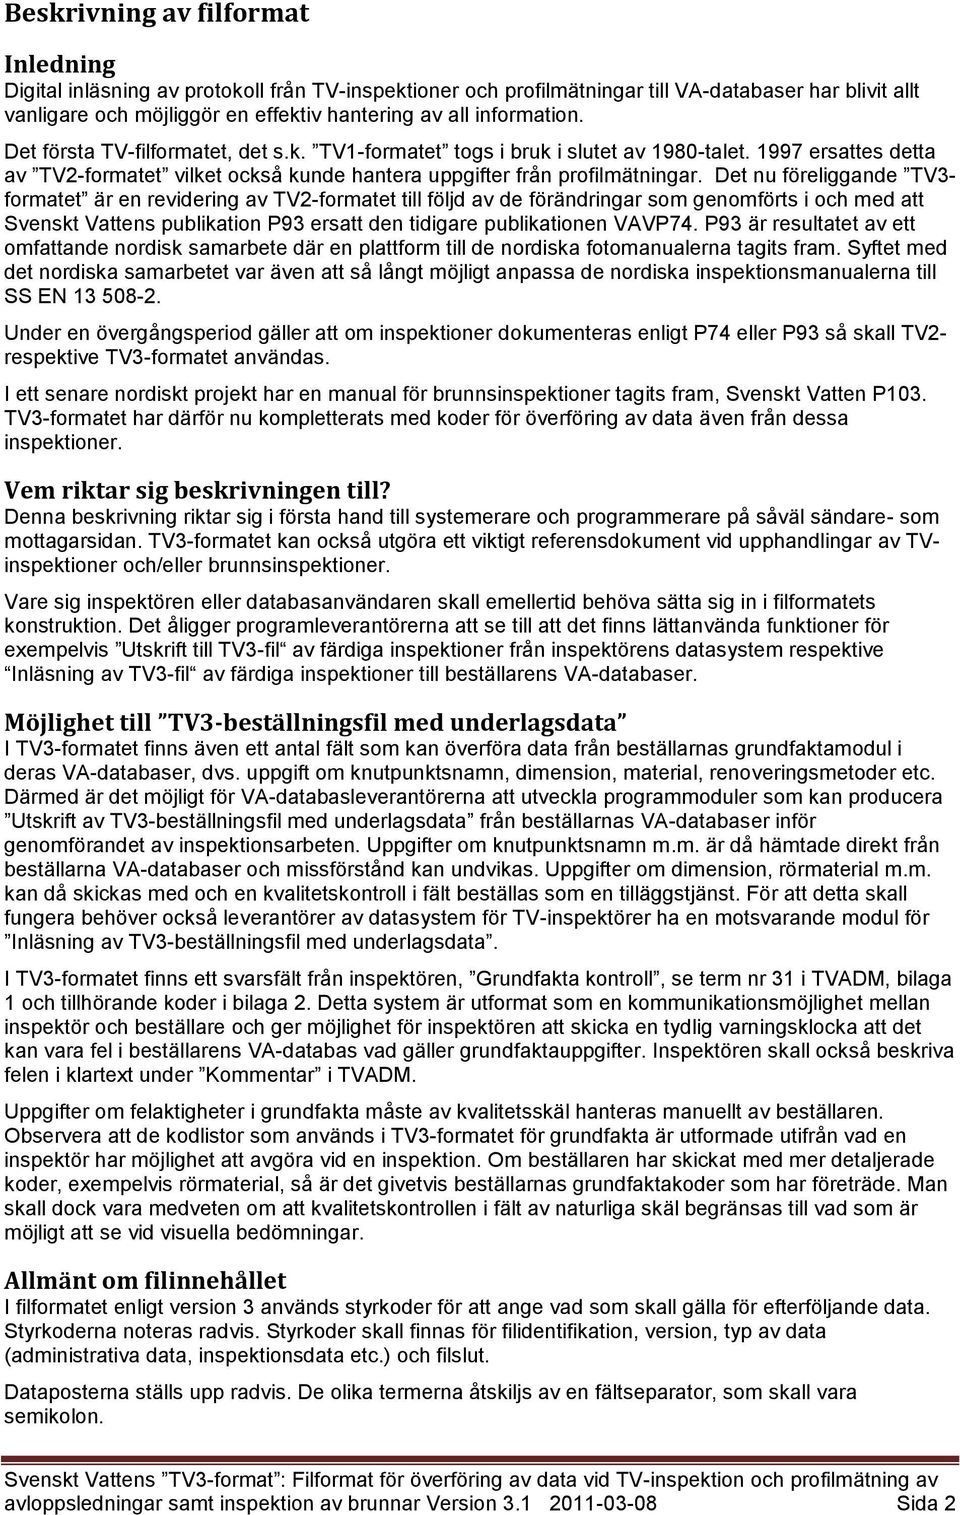 Det nu föreliggande TV3- formatet är en revidering av TV2-formatet till följd av de förändringar som genomförts i och med att Svenskt Vattens publikation P93 ersatt den tidigare publikationen VAVP74.